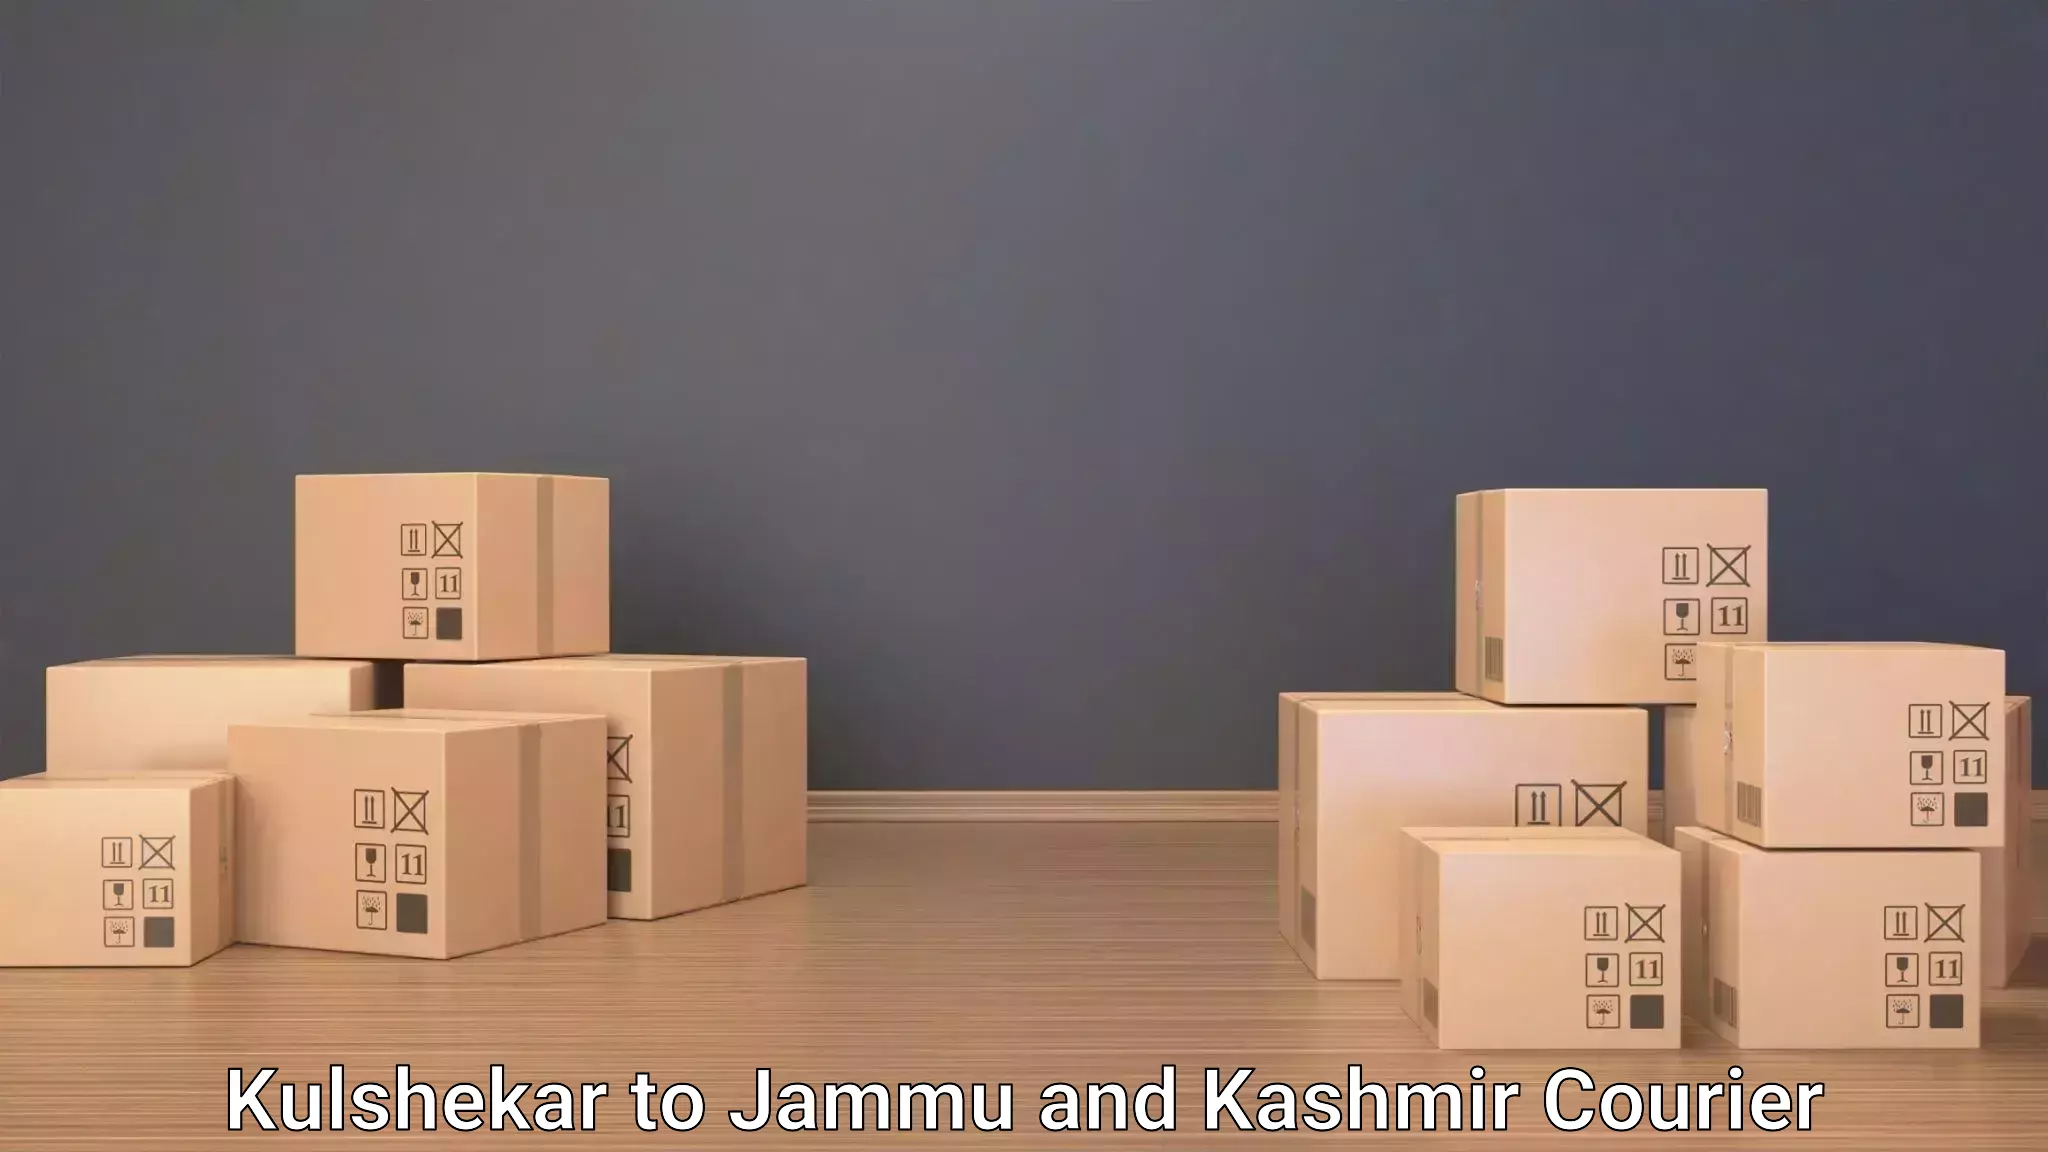 Baggage shipping service Kulshekar to Shopian